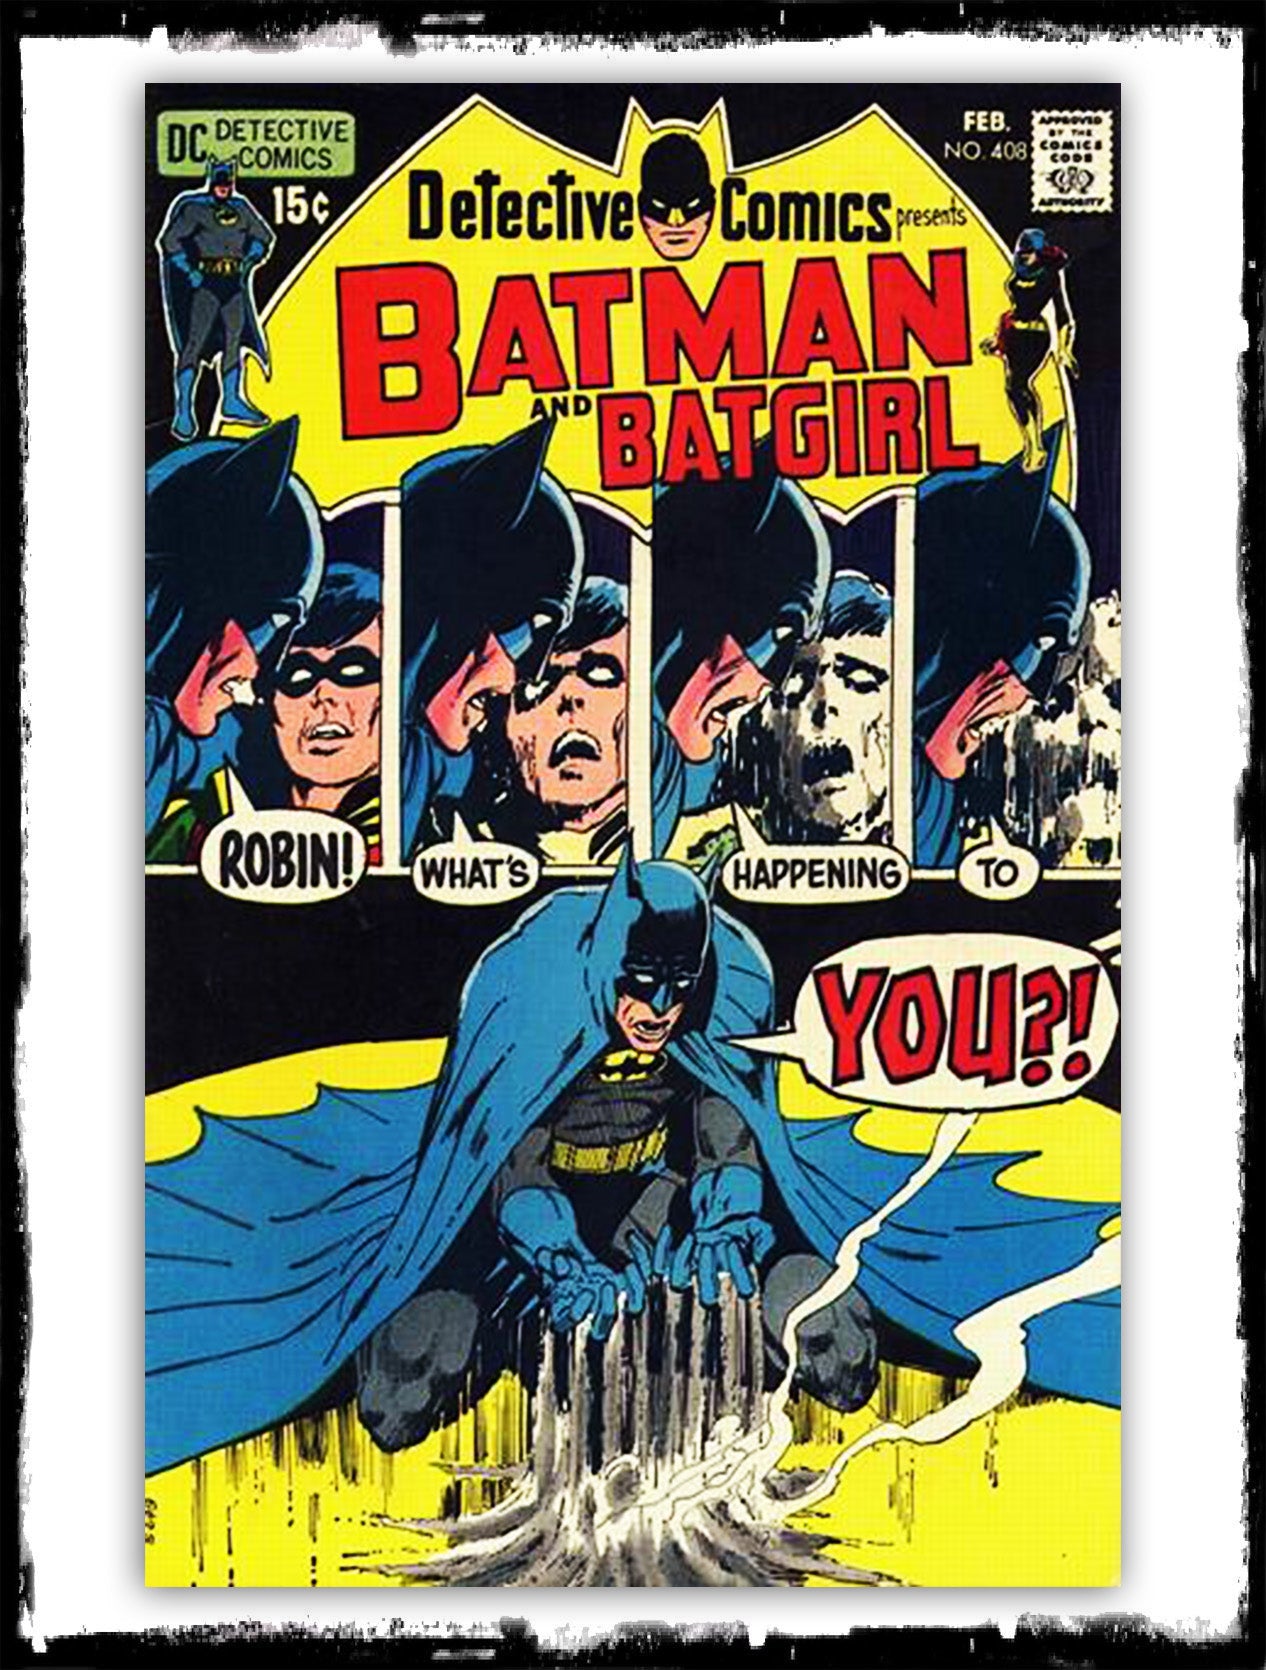 neal adams batman covers